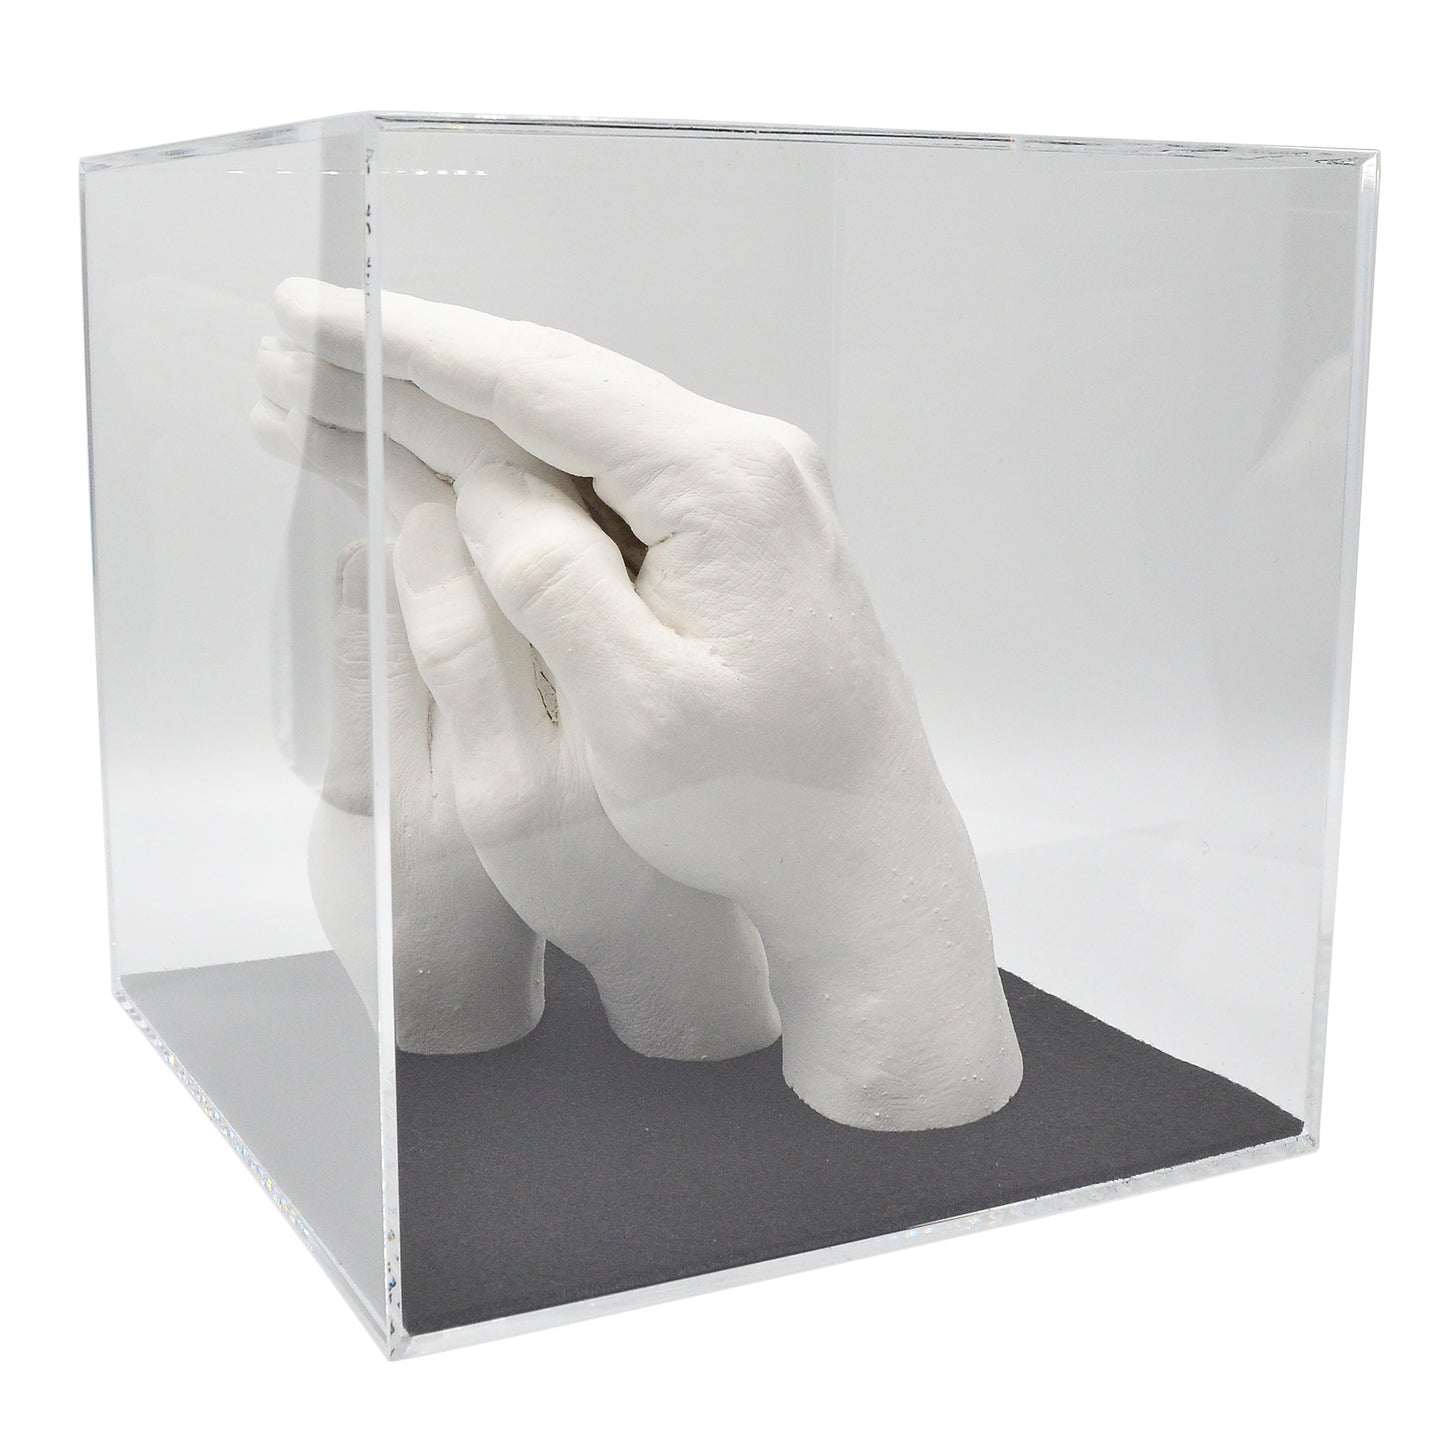 Abformsets "Family Hands" TRIO+ mit Acrylglaswürfel (17,5 x 17,5 x 17,5 cm)